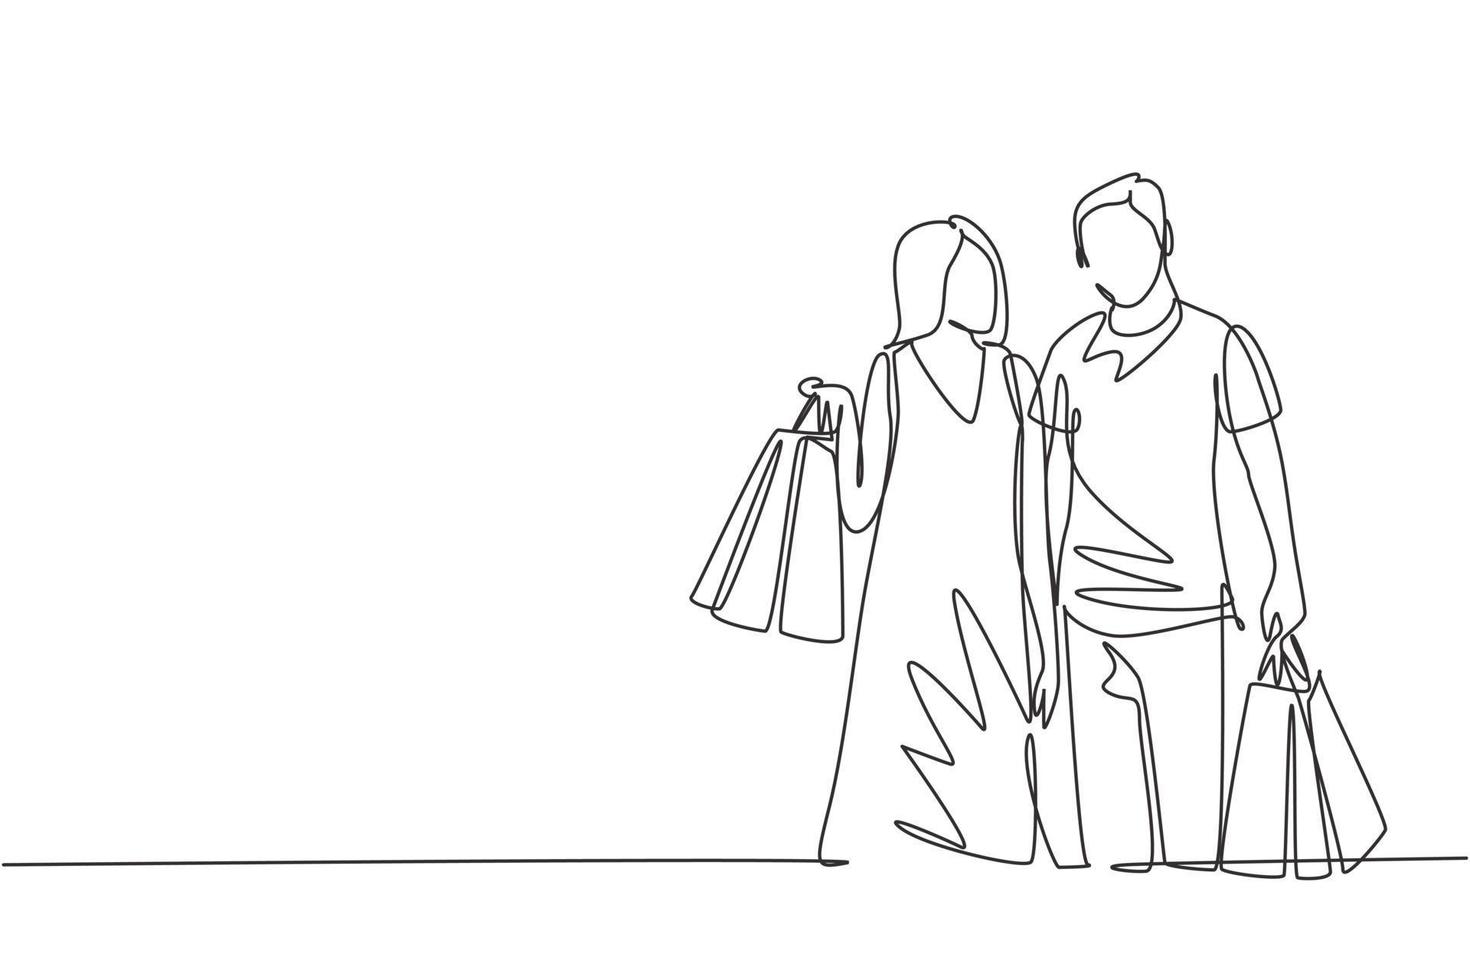 una sola línea de dibujo joven pareja romántica feliz sosteniendo bolsas de papel después de comprar vestidos y necesidades personales juntos en el centro comercial. concepto de compras comerciales. ilustración de diseño de dibujo de línea continua vector